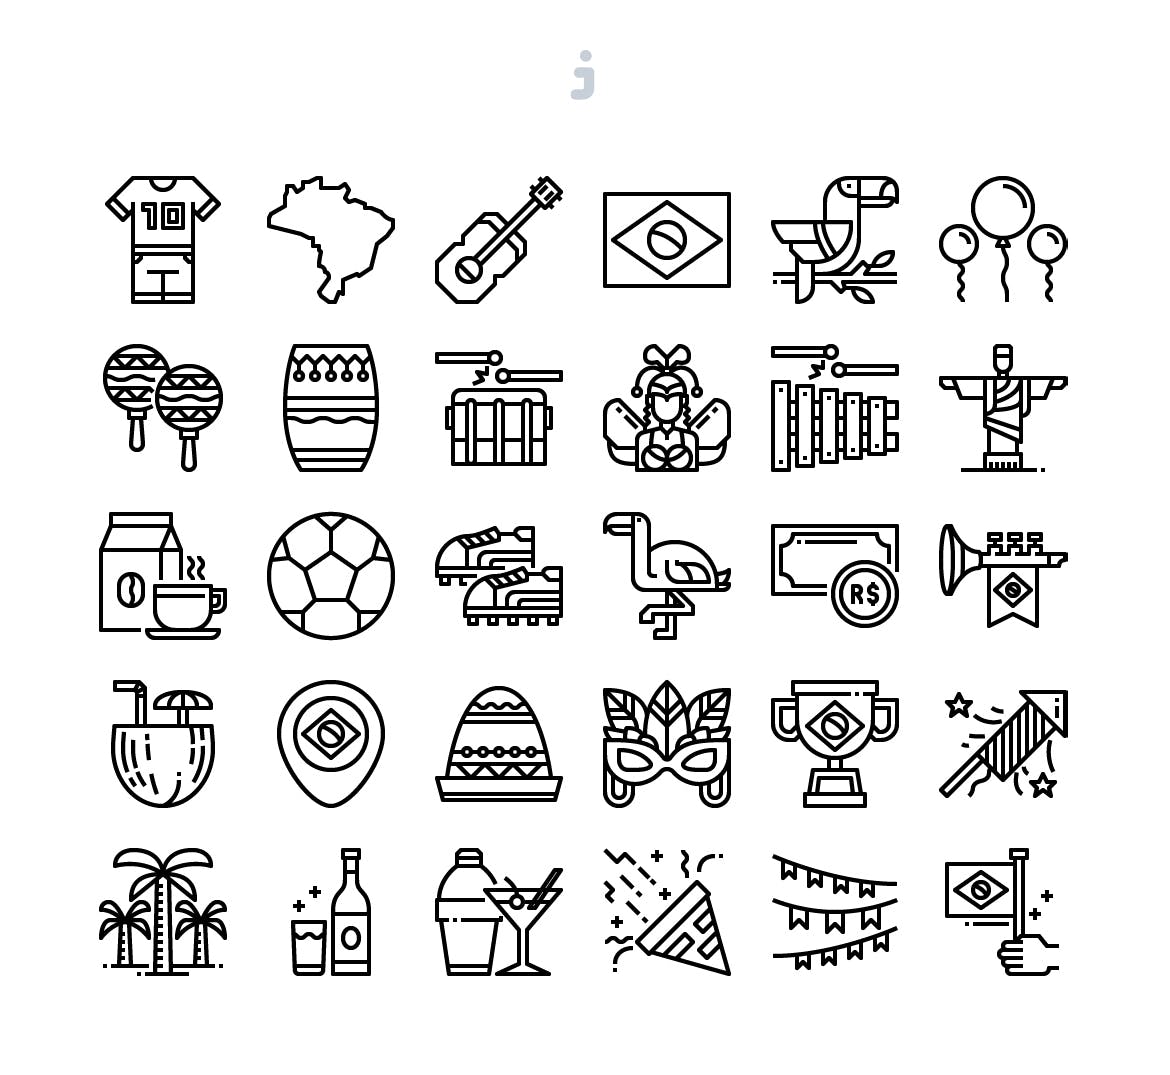 30个巴西球赛元素矢量图标源文件下载30 Brazil Element Icons插图2